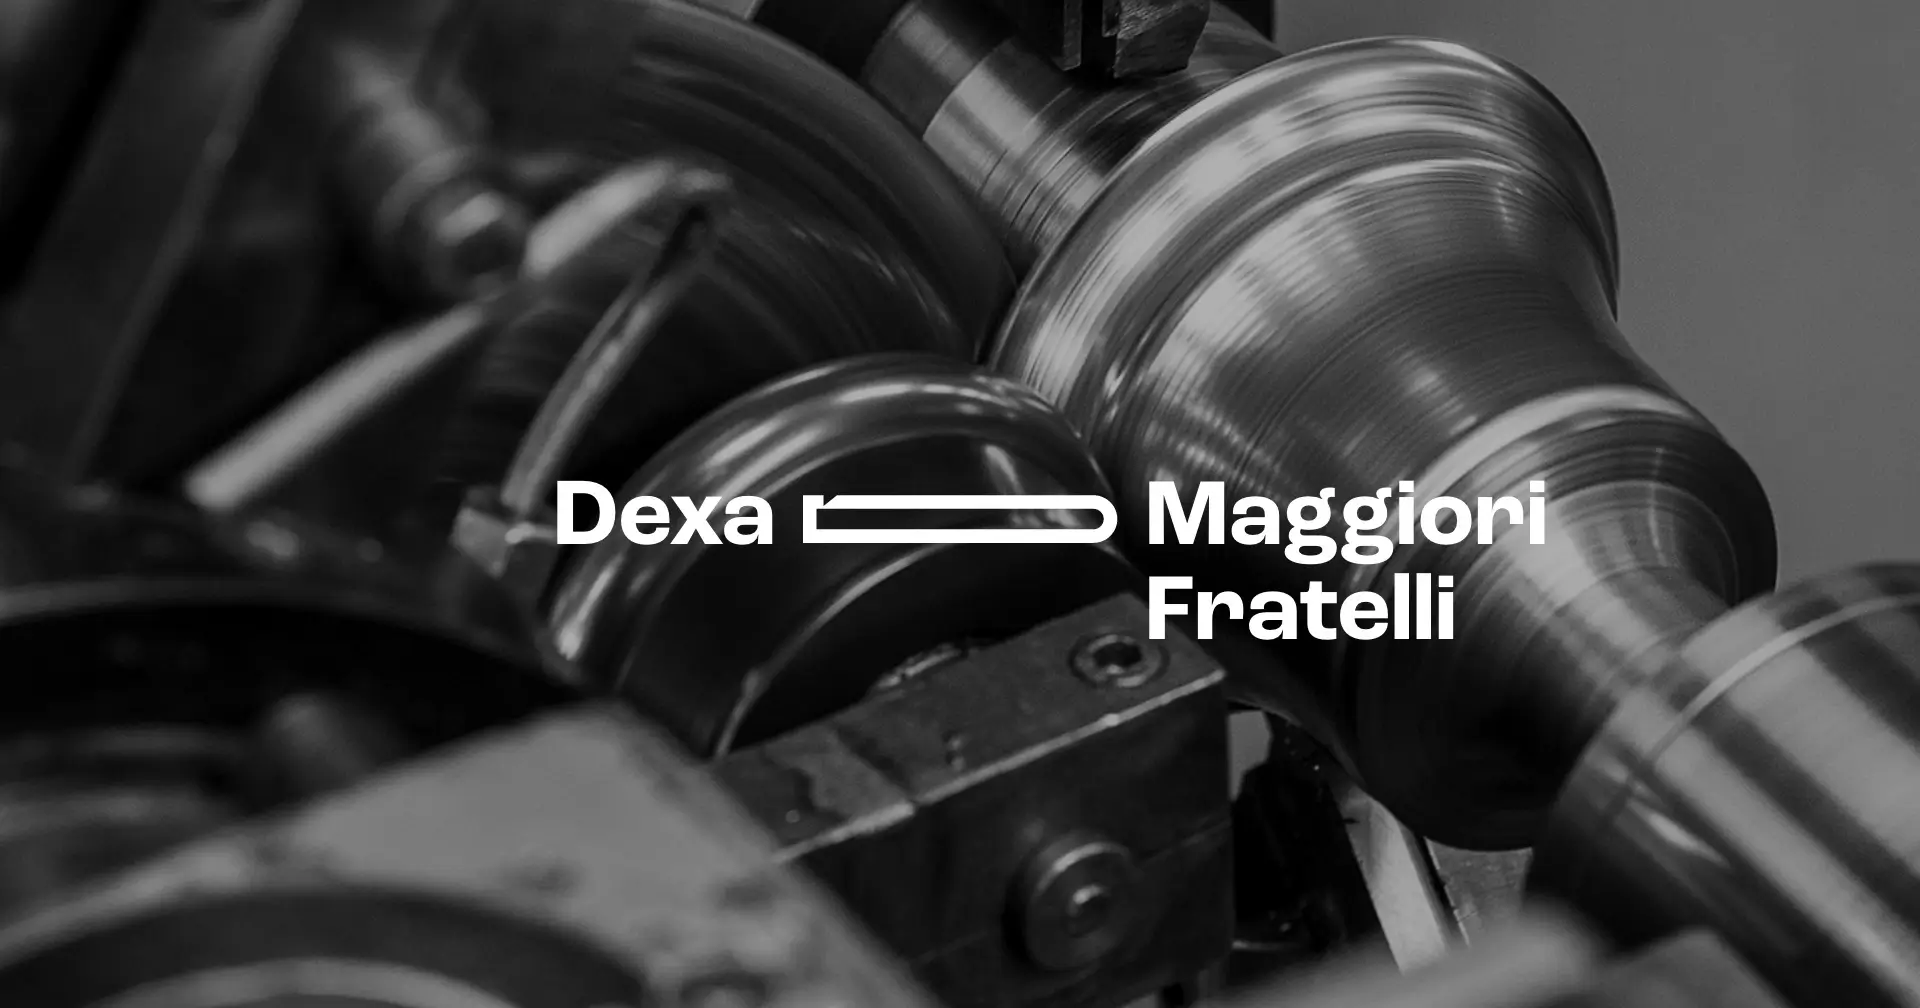 Dexa dà un taglio nuovo alla comunicazione di Maggiori Fratelli.